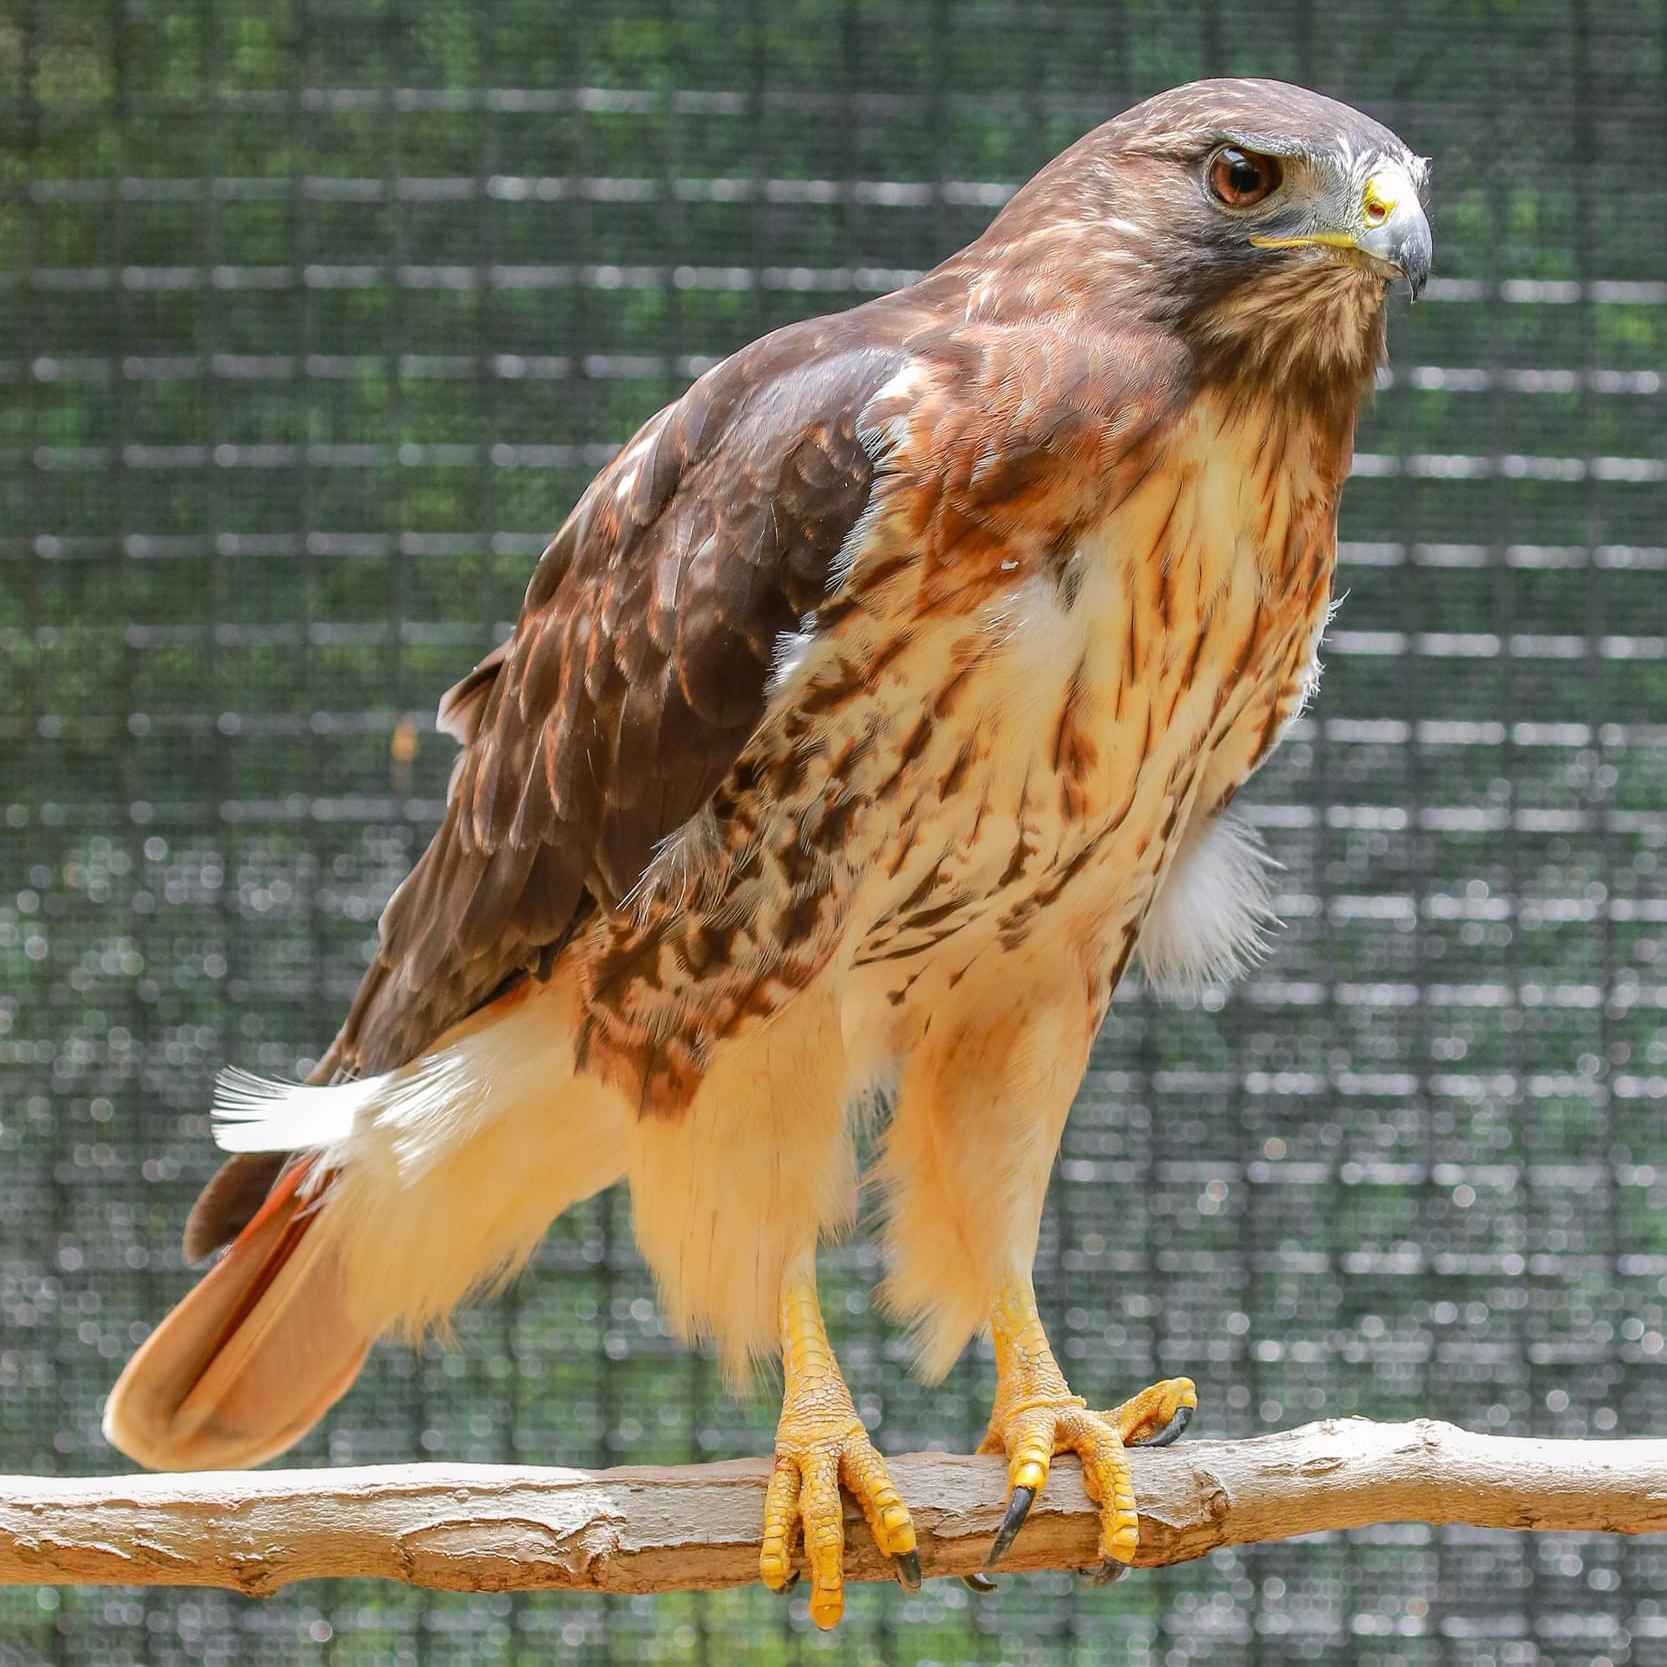 Red-tailed hawk raptor ambassador named Zihna